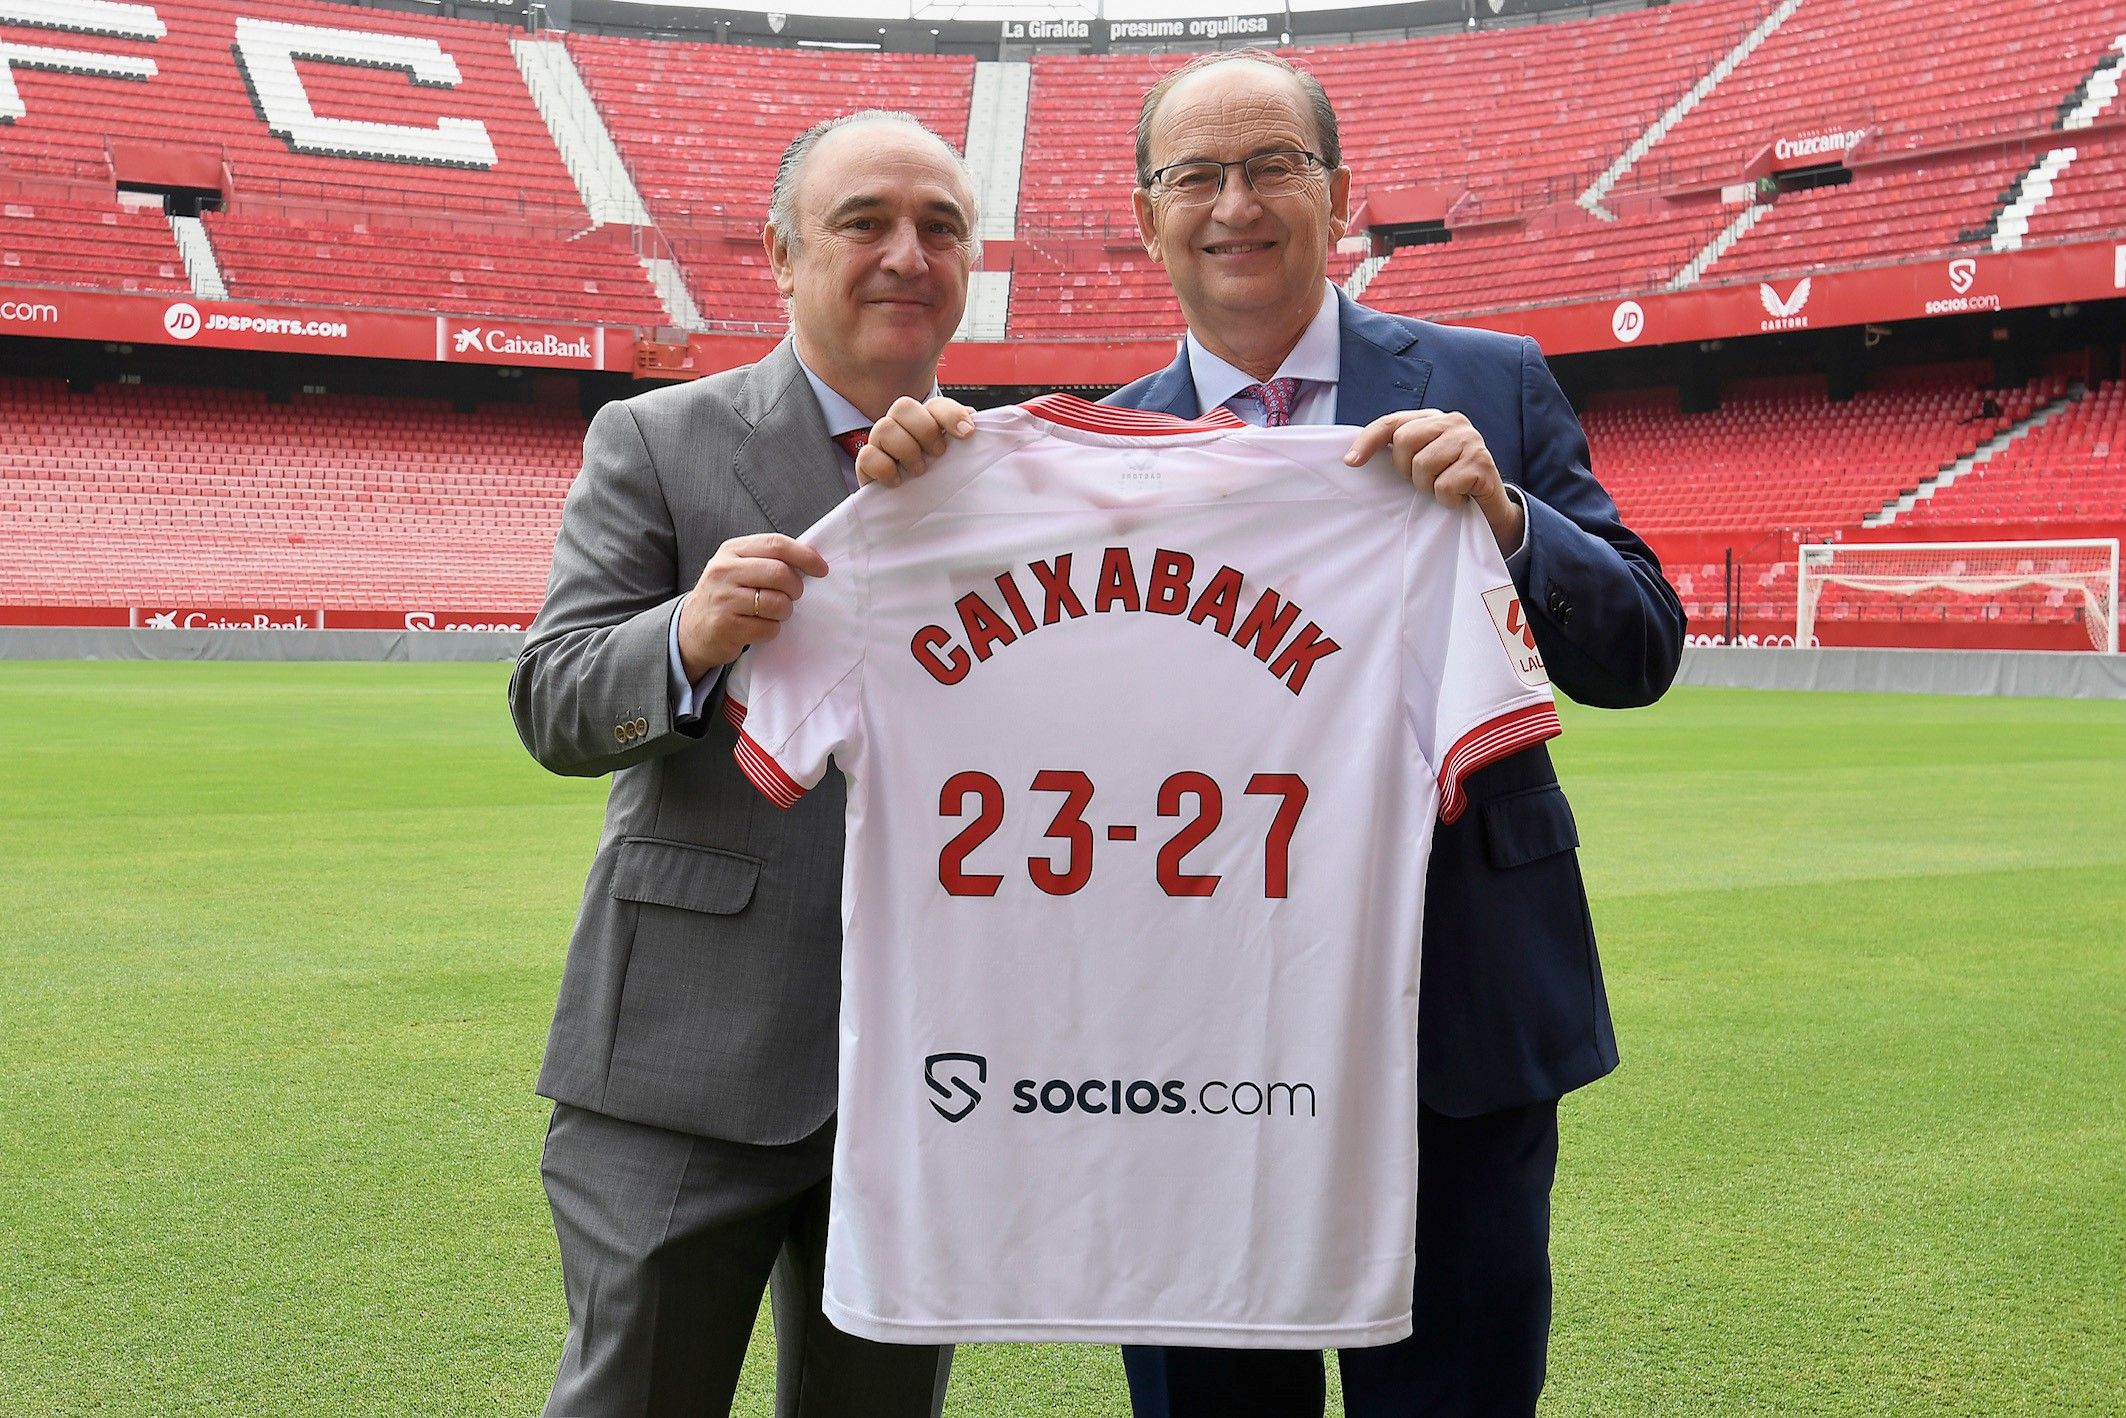 El Sevilla FC renueva a CaixaBank como patrocinador hasta 2026-2027